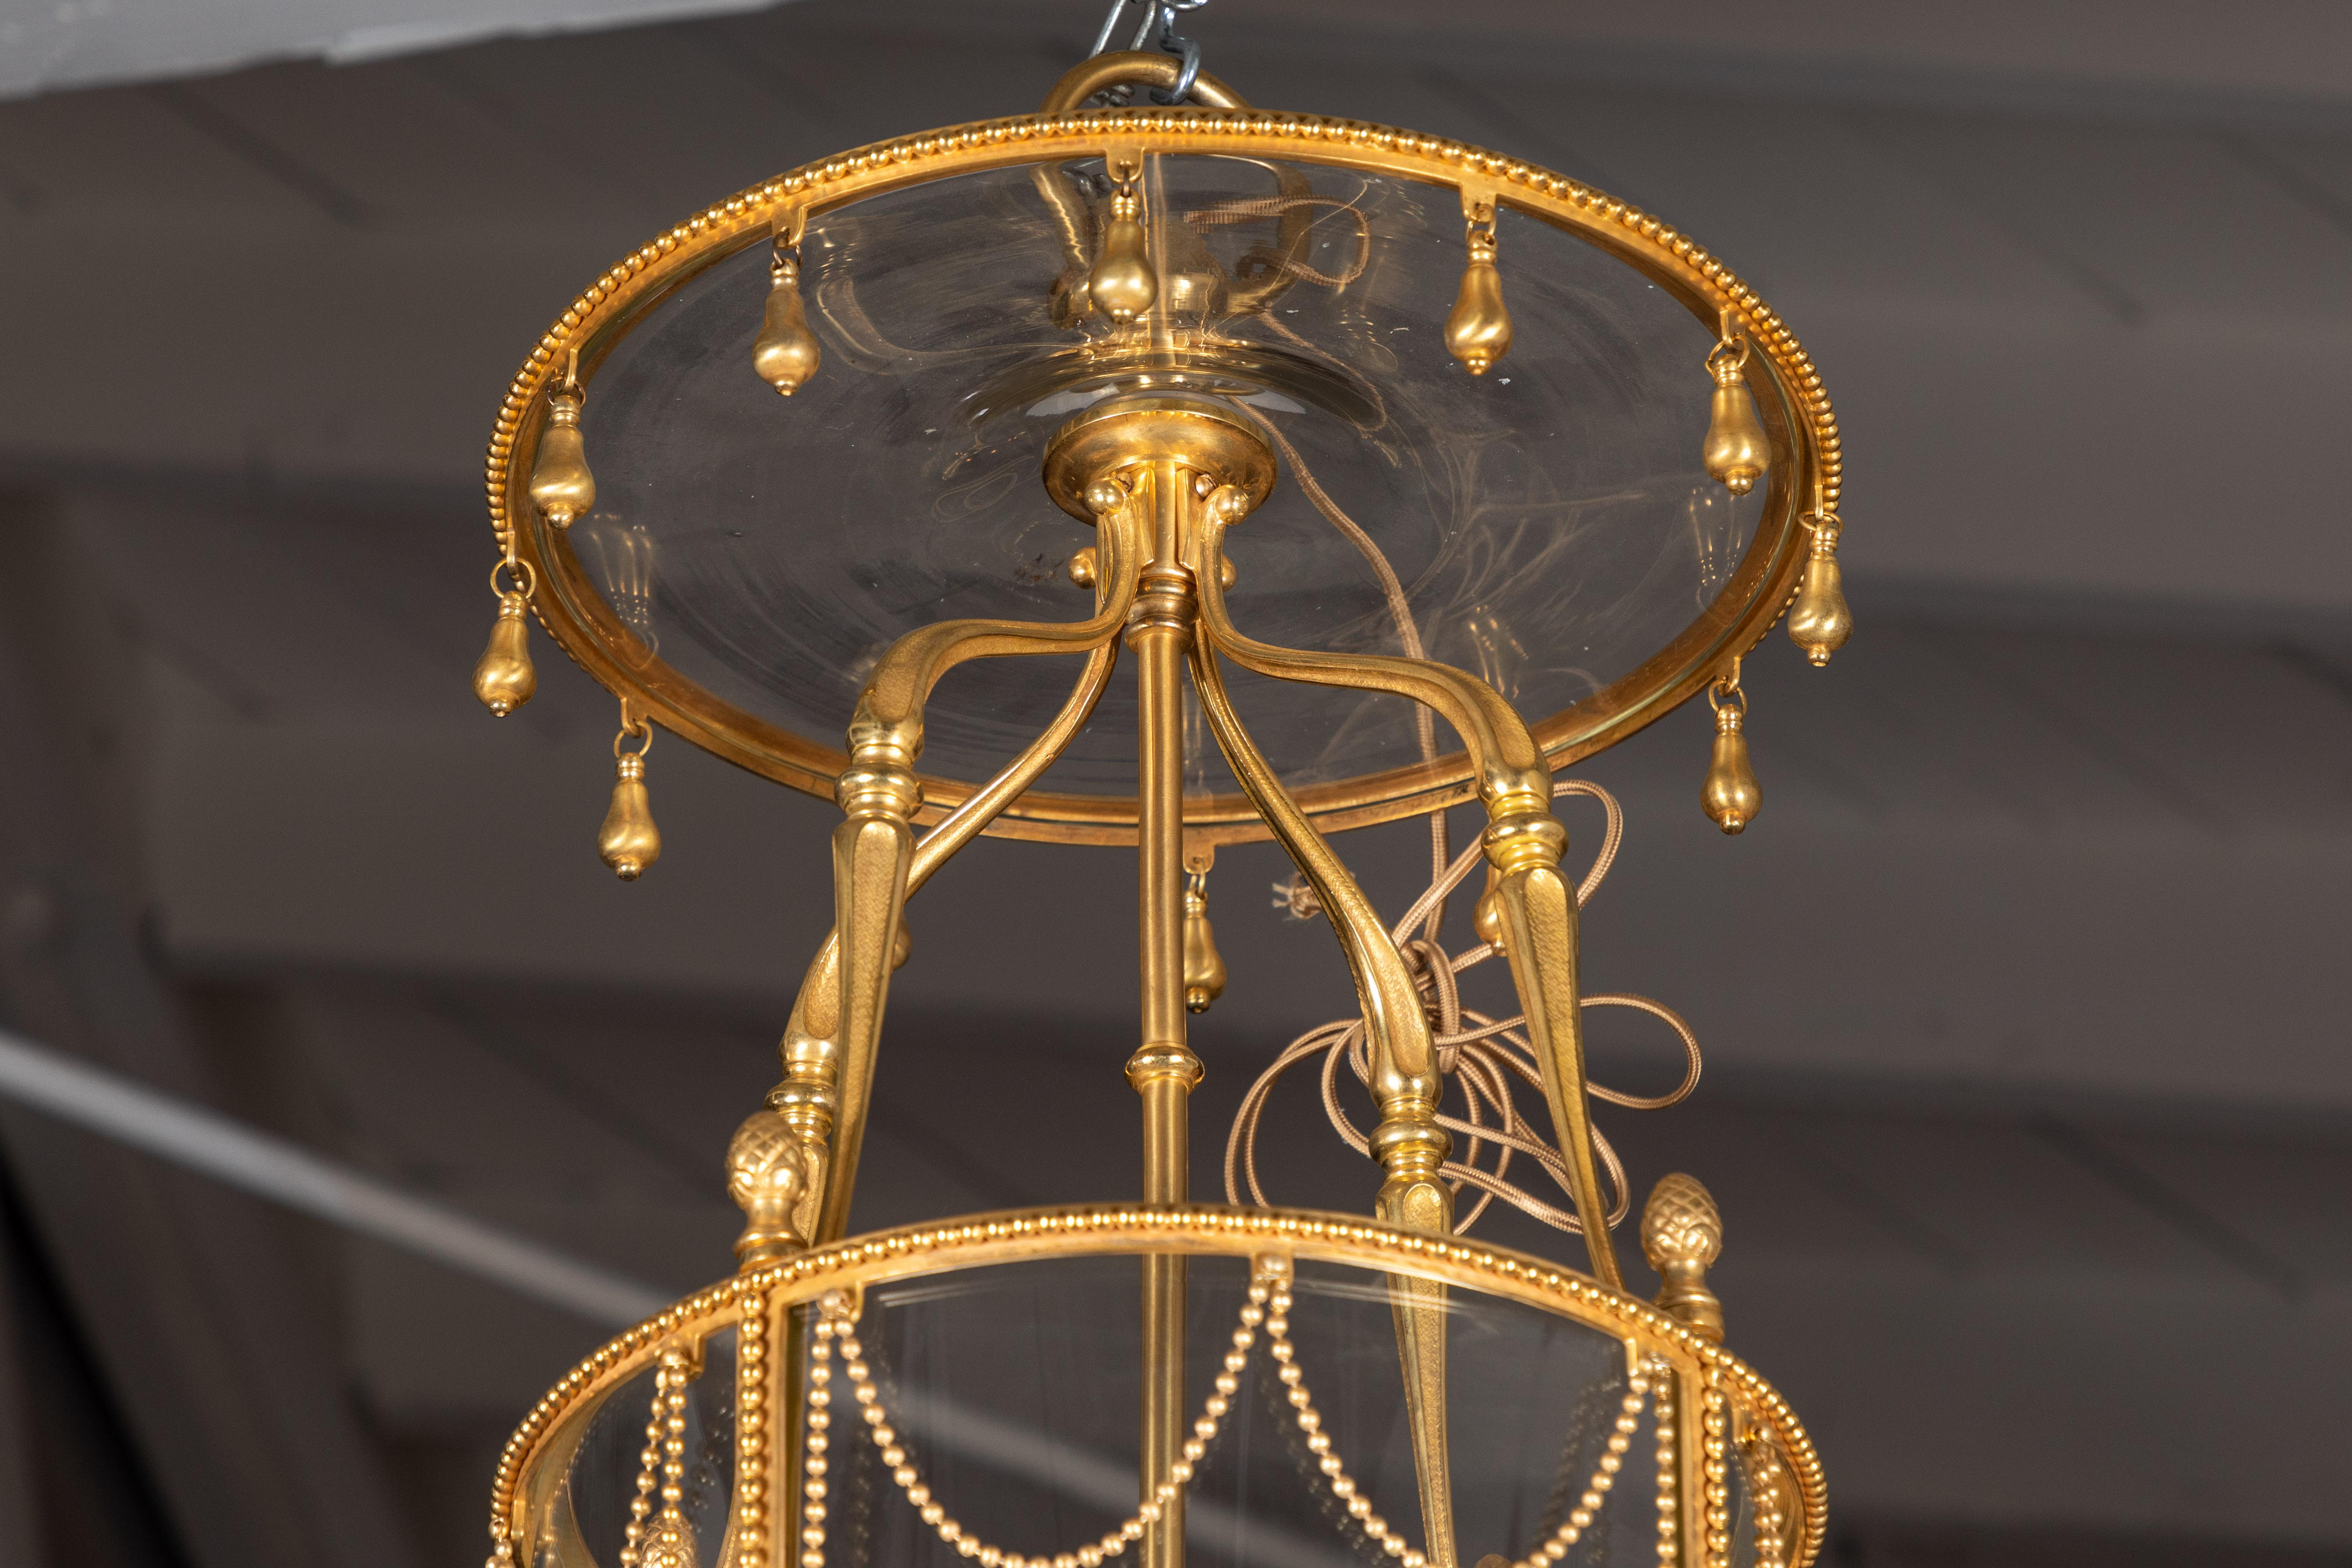 Eine glitzernde, vierflammige französische Kutschenlaterne aus dem 19. Jh. mit einem Rahmen aus Bronze-Doré und einem Baldachin mit vergoldeten Tropfen. Der tonnenförmige Korpus wird von einer Reihe von Kettenbändern gekrönt, die von schön geformten